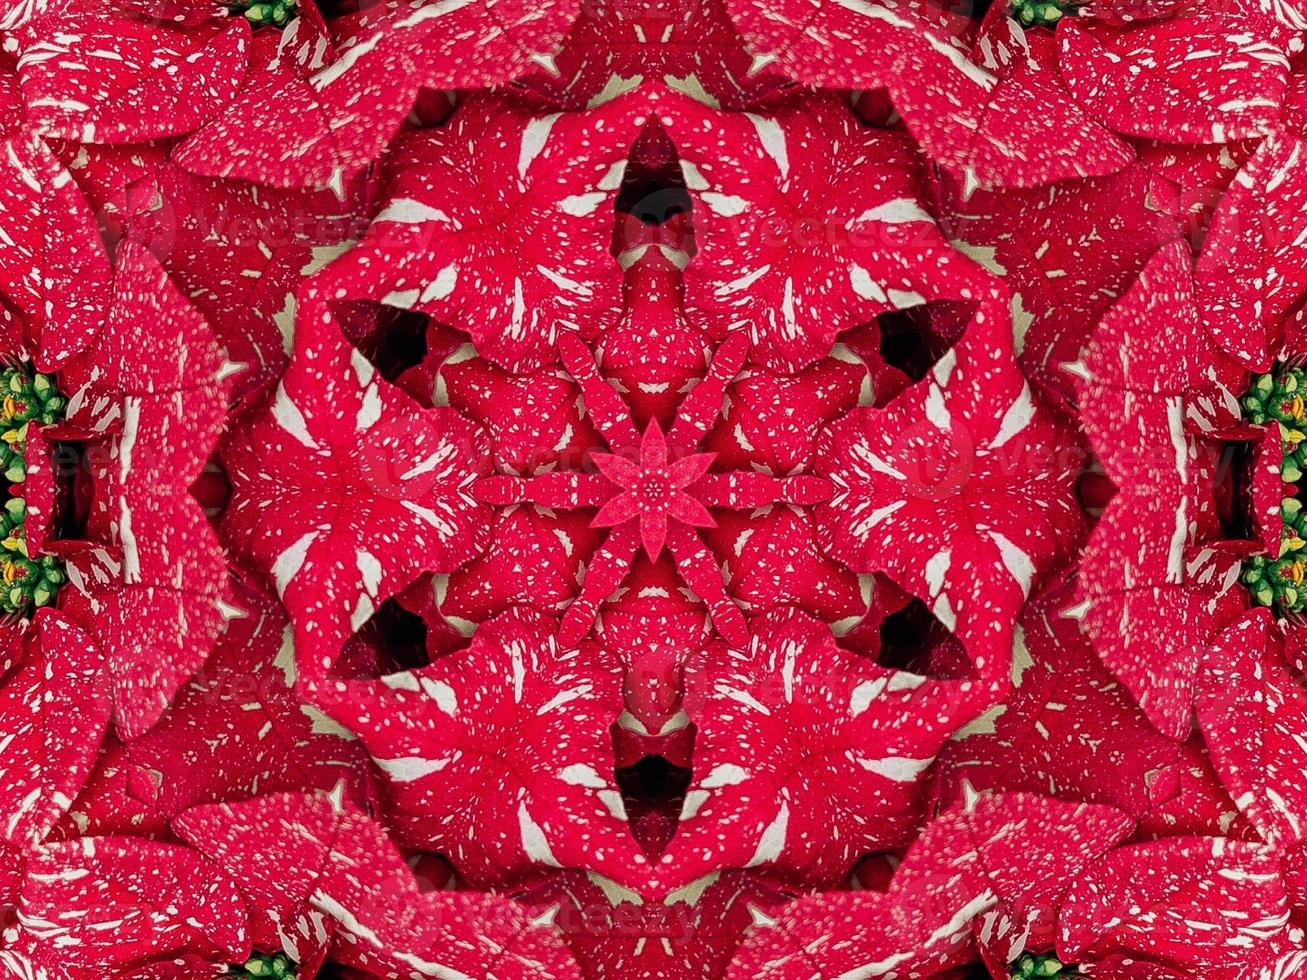 fondo de caleidoscopio floral rojo abstracto patrón único y simétrico para vibraciones navideñas foto